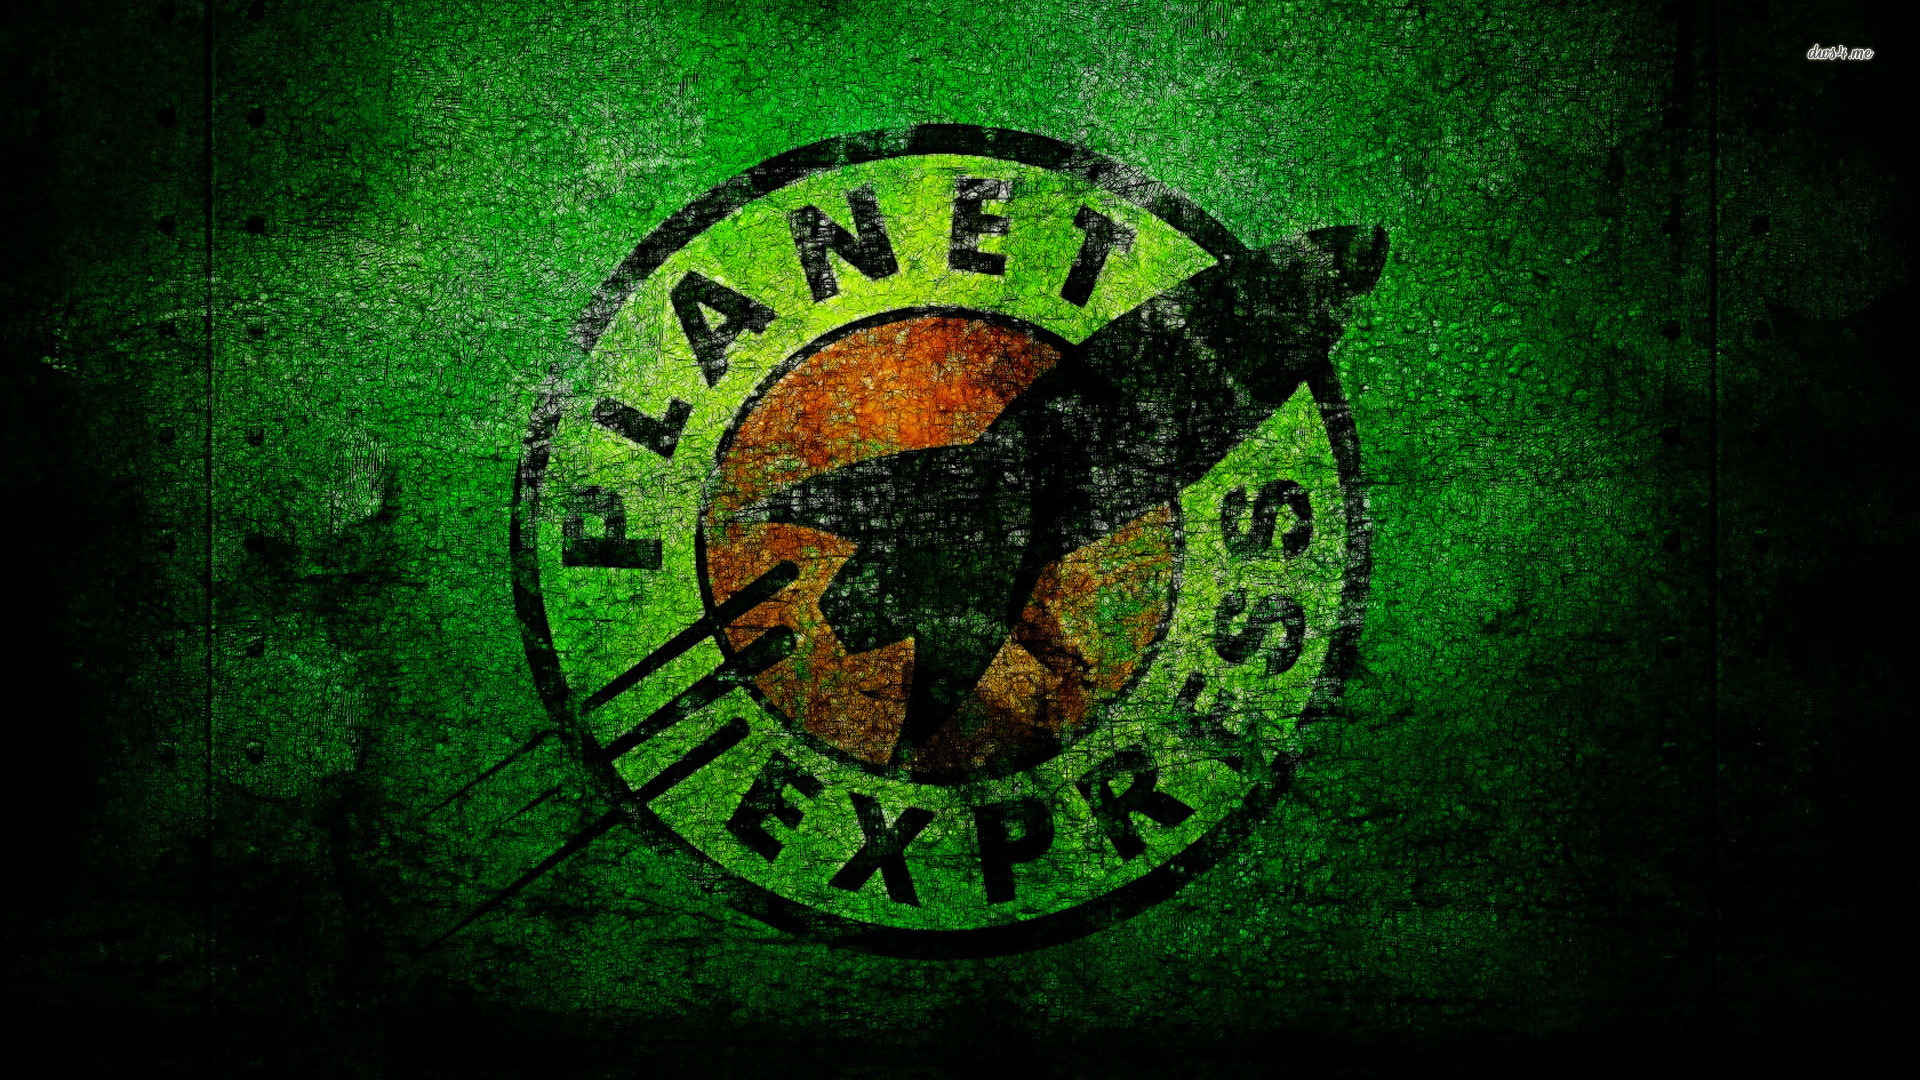 planet express wallpaper,grün,schriftart,grafikdesign,grafik,kreis